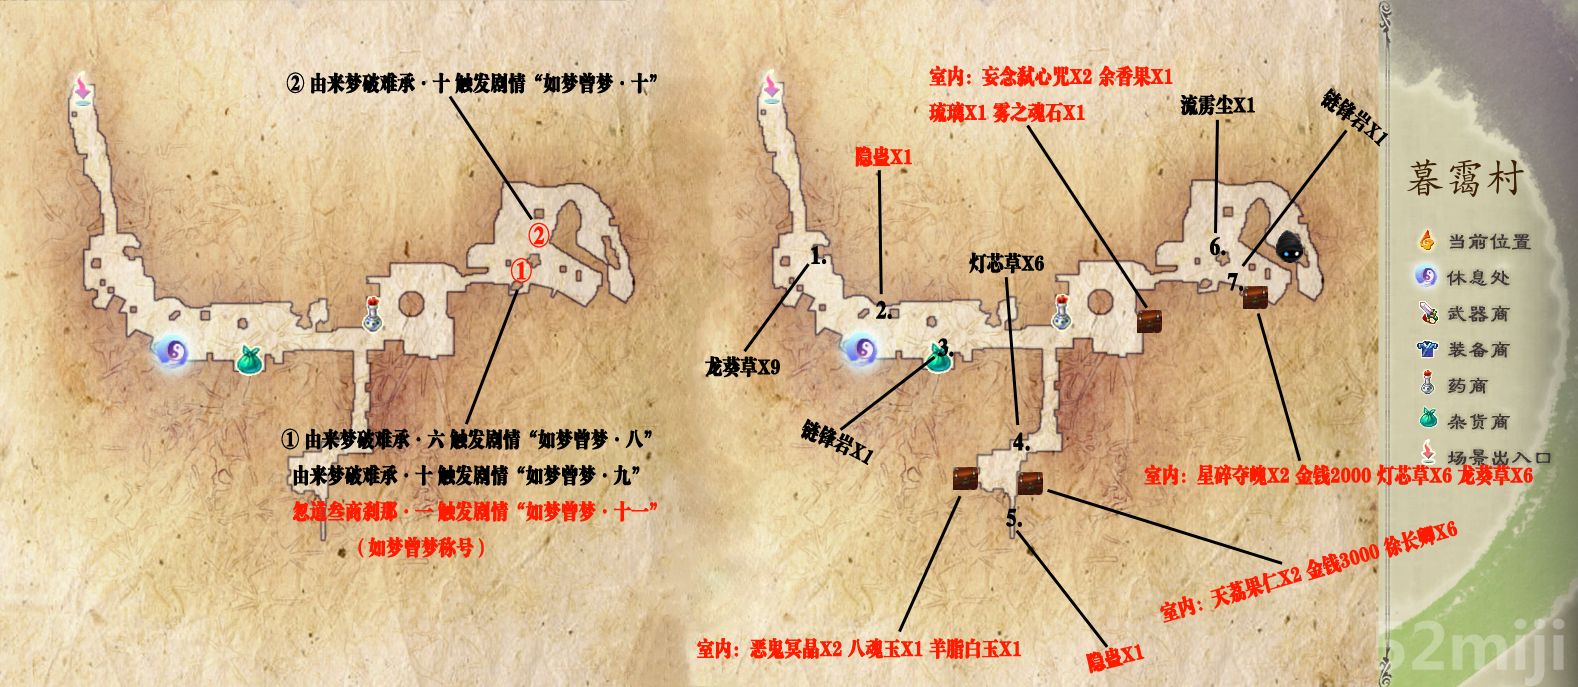 仙剑奇侠传5:前传》全地图整理资料(标注) - 我